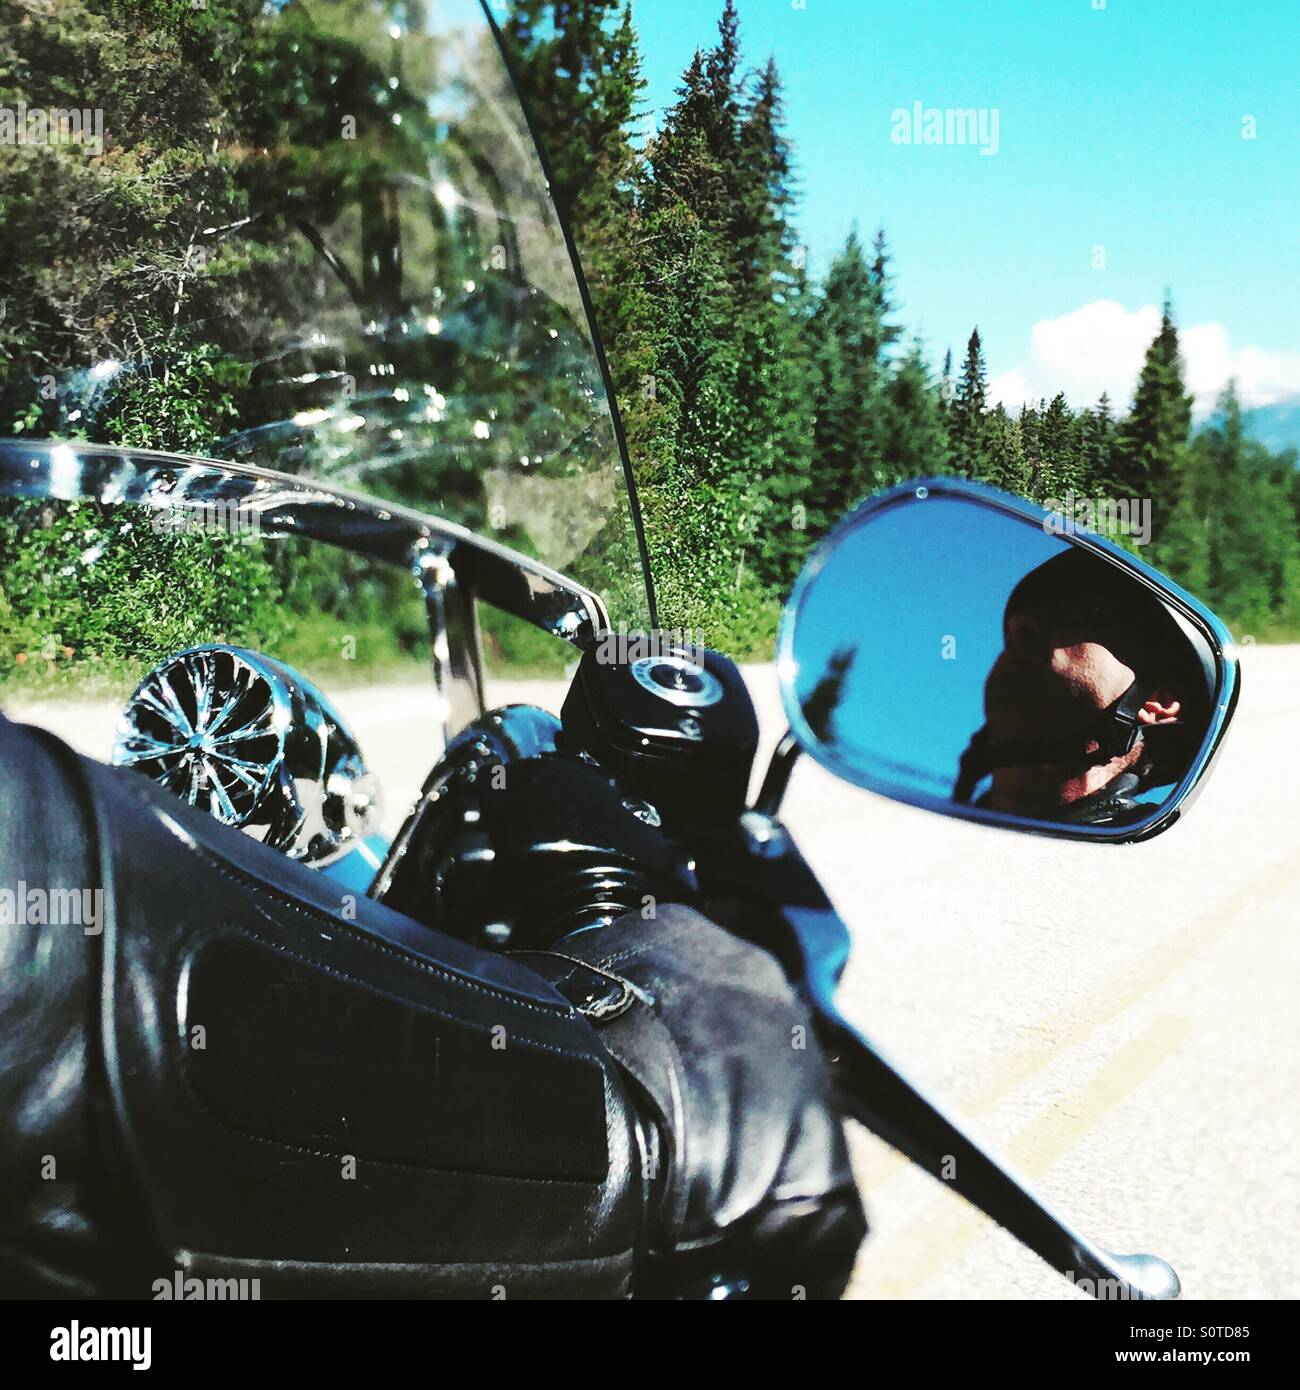 Motorista llevaba una chaqueta de cuero negro montando una Harley Davidson crucero por las calles de Jasper, Canadá, bordeada de pinos acompañado por los cielos azules. Foto de stock